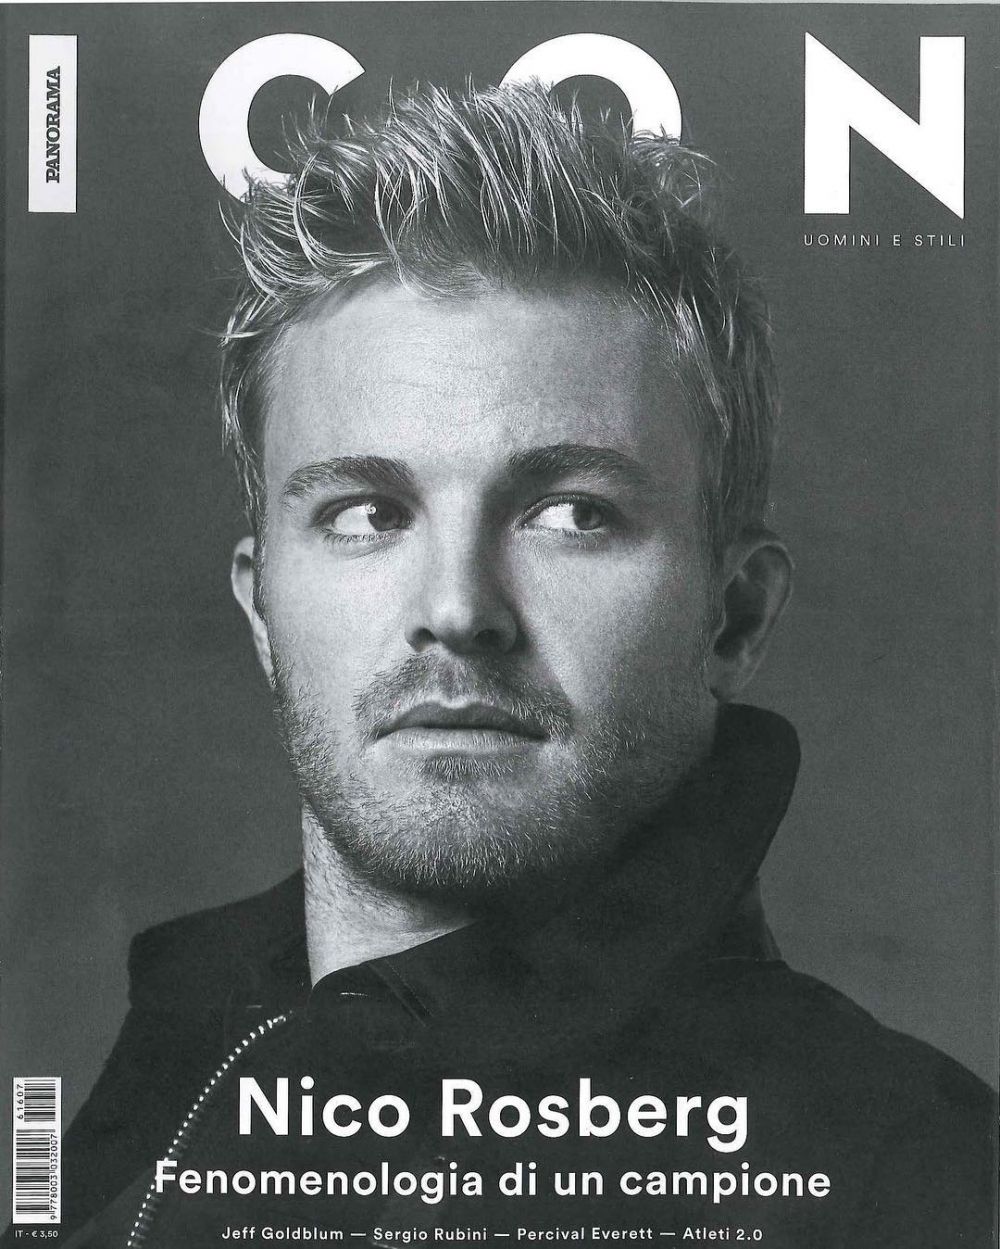 10 Foto gantengnya Nico Rosberg, sang juara F1 2016